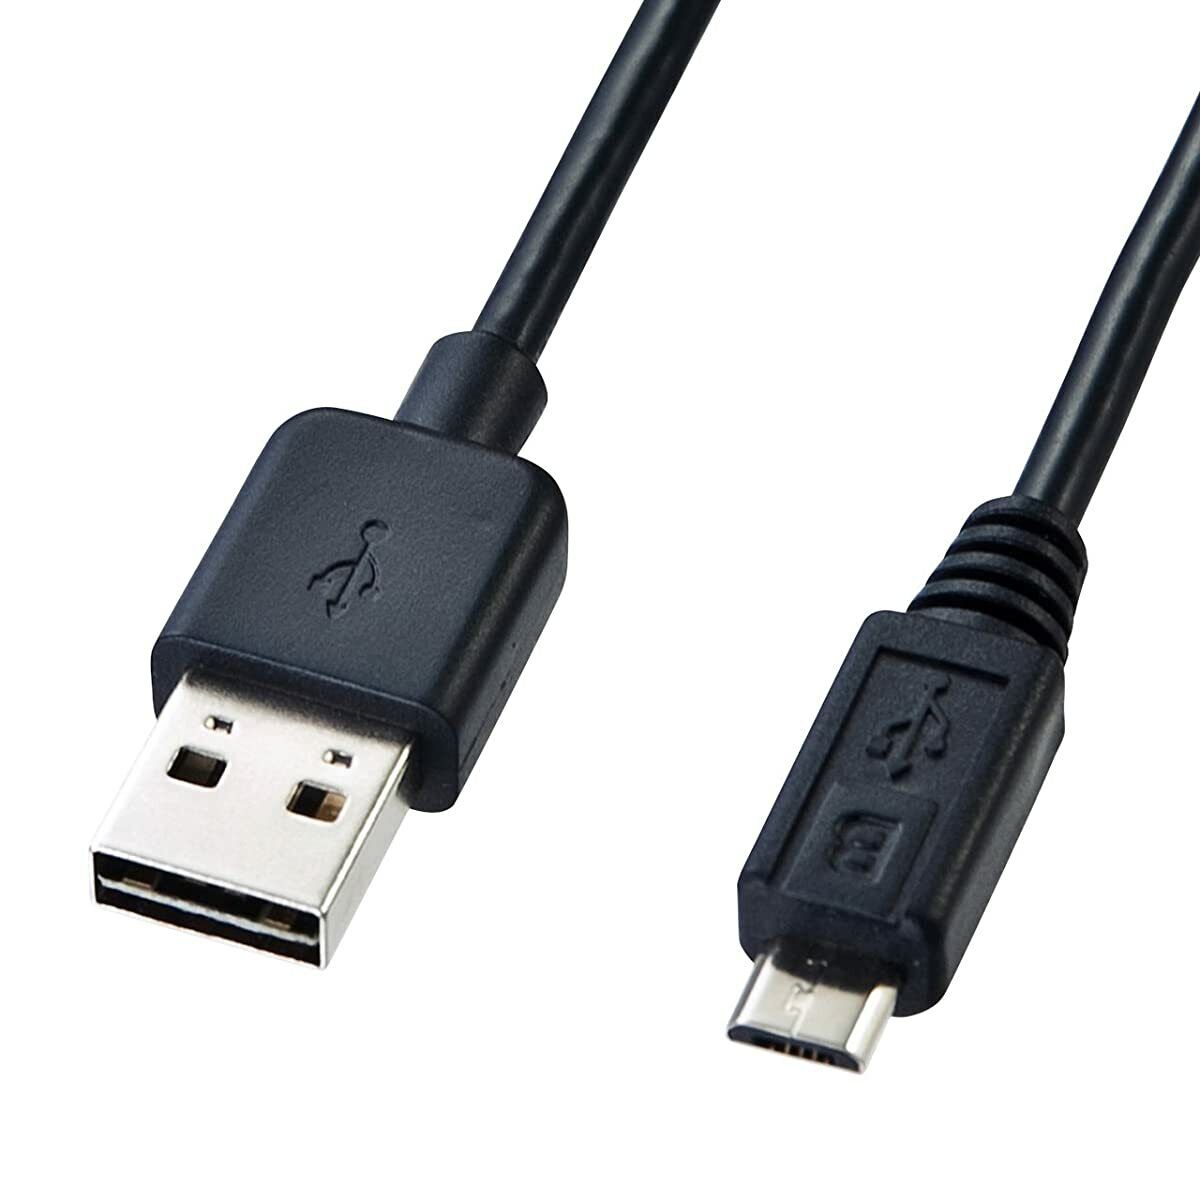 SANWA Both Sides Make Micro USB Cable (MicroB) Black 0.5m KU-RMCB05